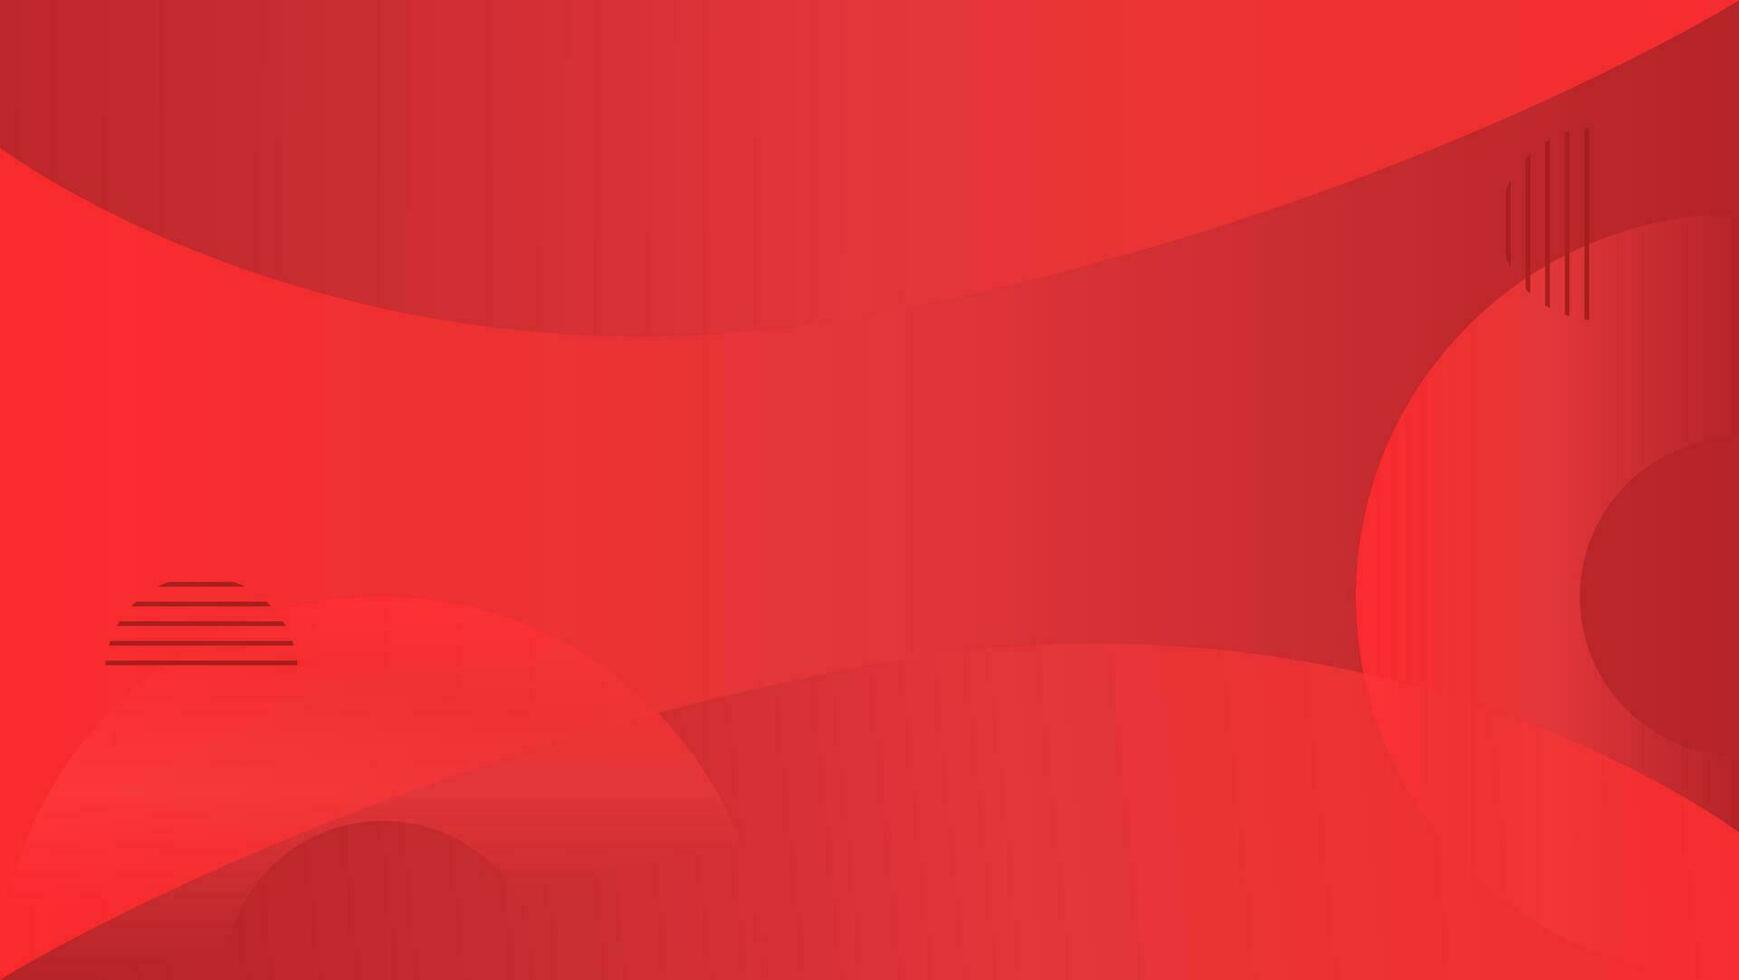 sfondo geometrico astratto rosso vettore